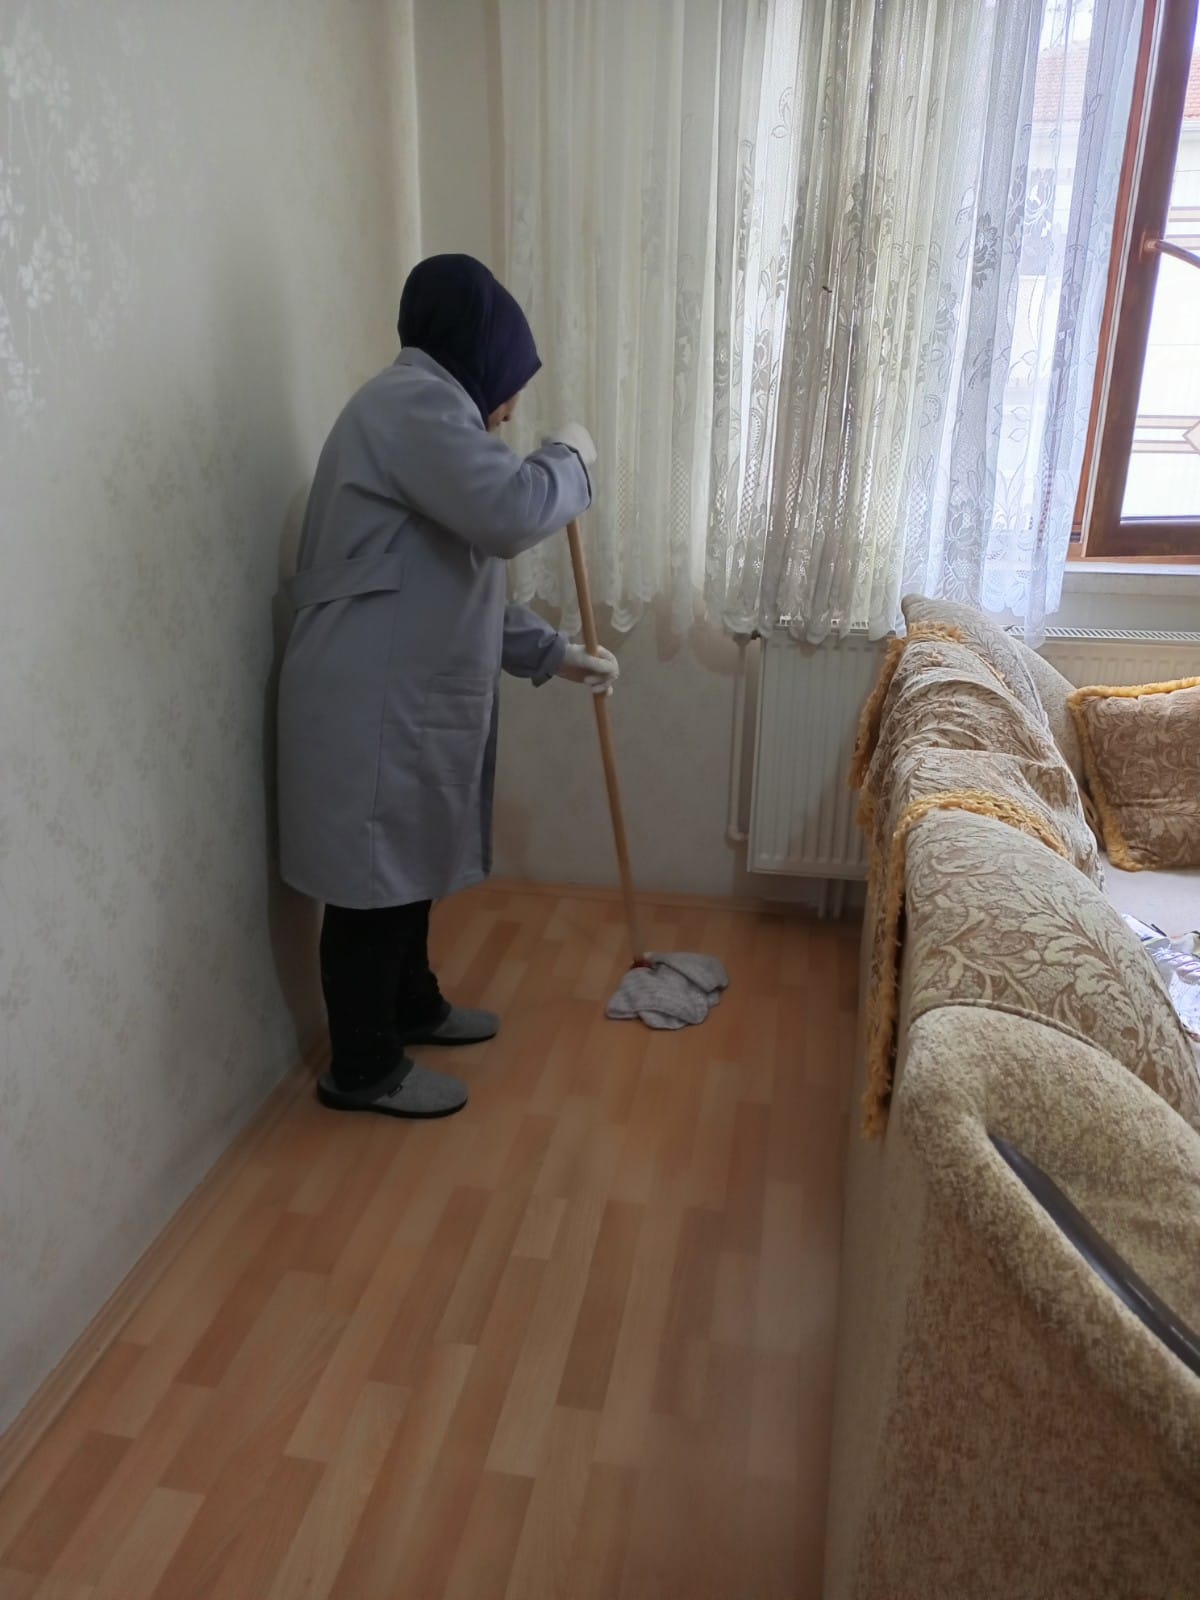 Sincan Belediyesinden Yaşlılara Evde Temizlik Ve Bakım Hizmeti (2)